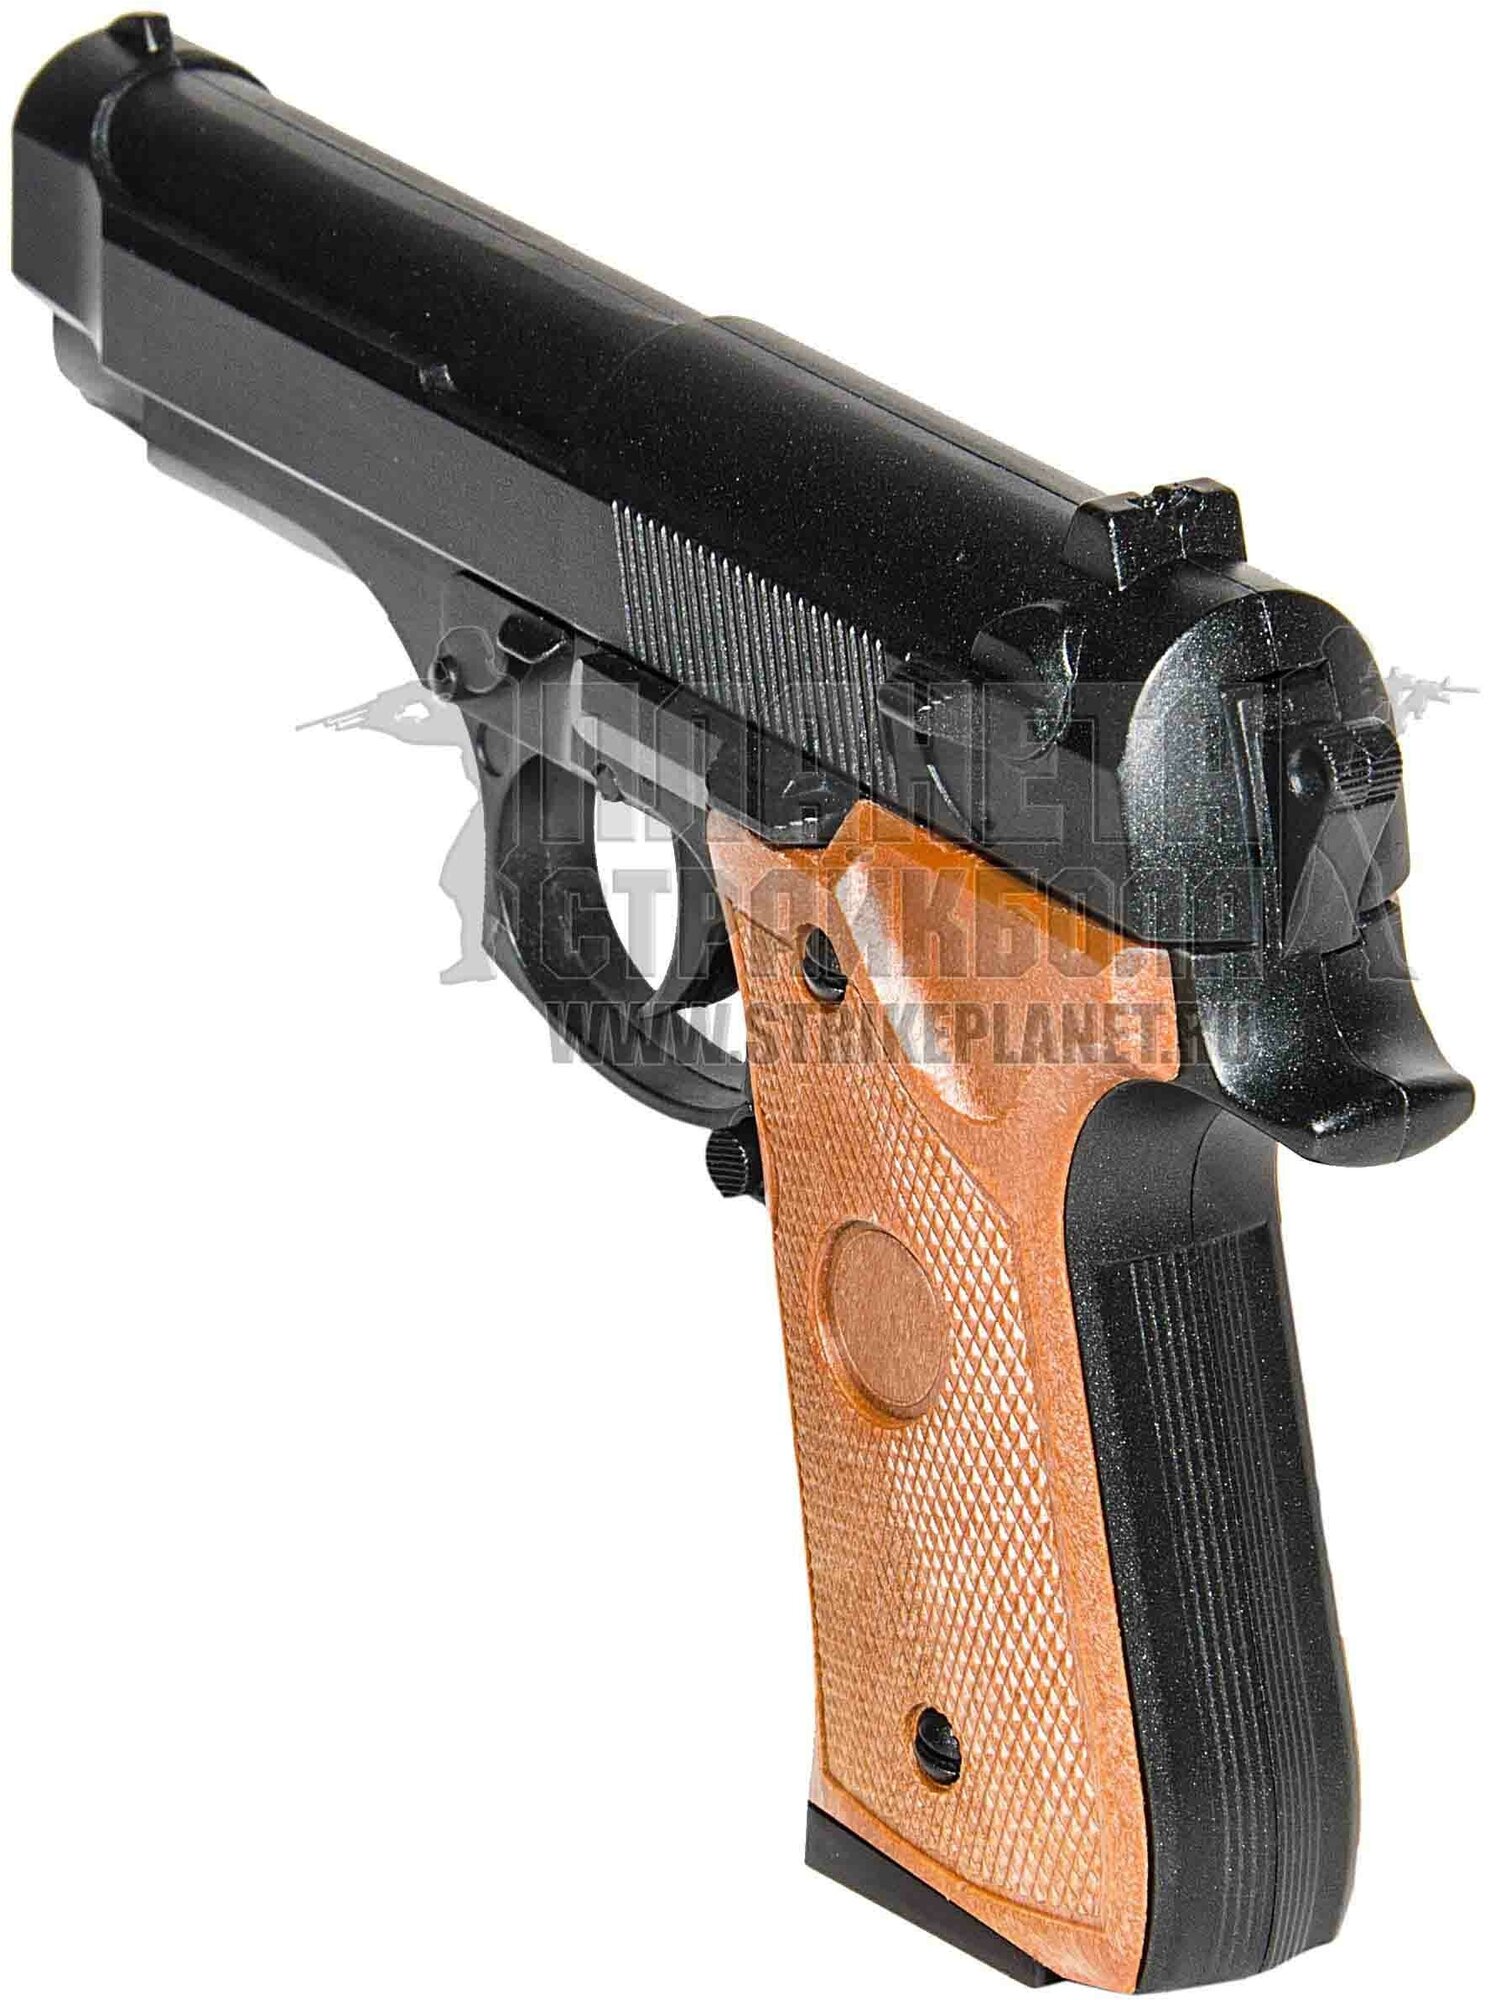 Cтрайкбольный пистолет Galaxy G.22 Beretta 92 mini металлический, пружинный